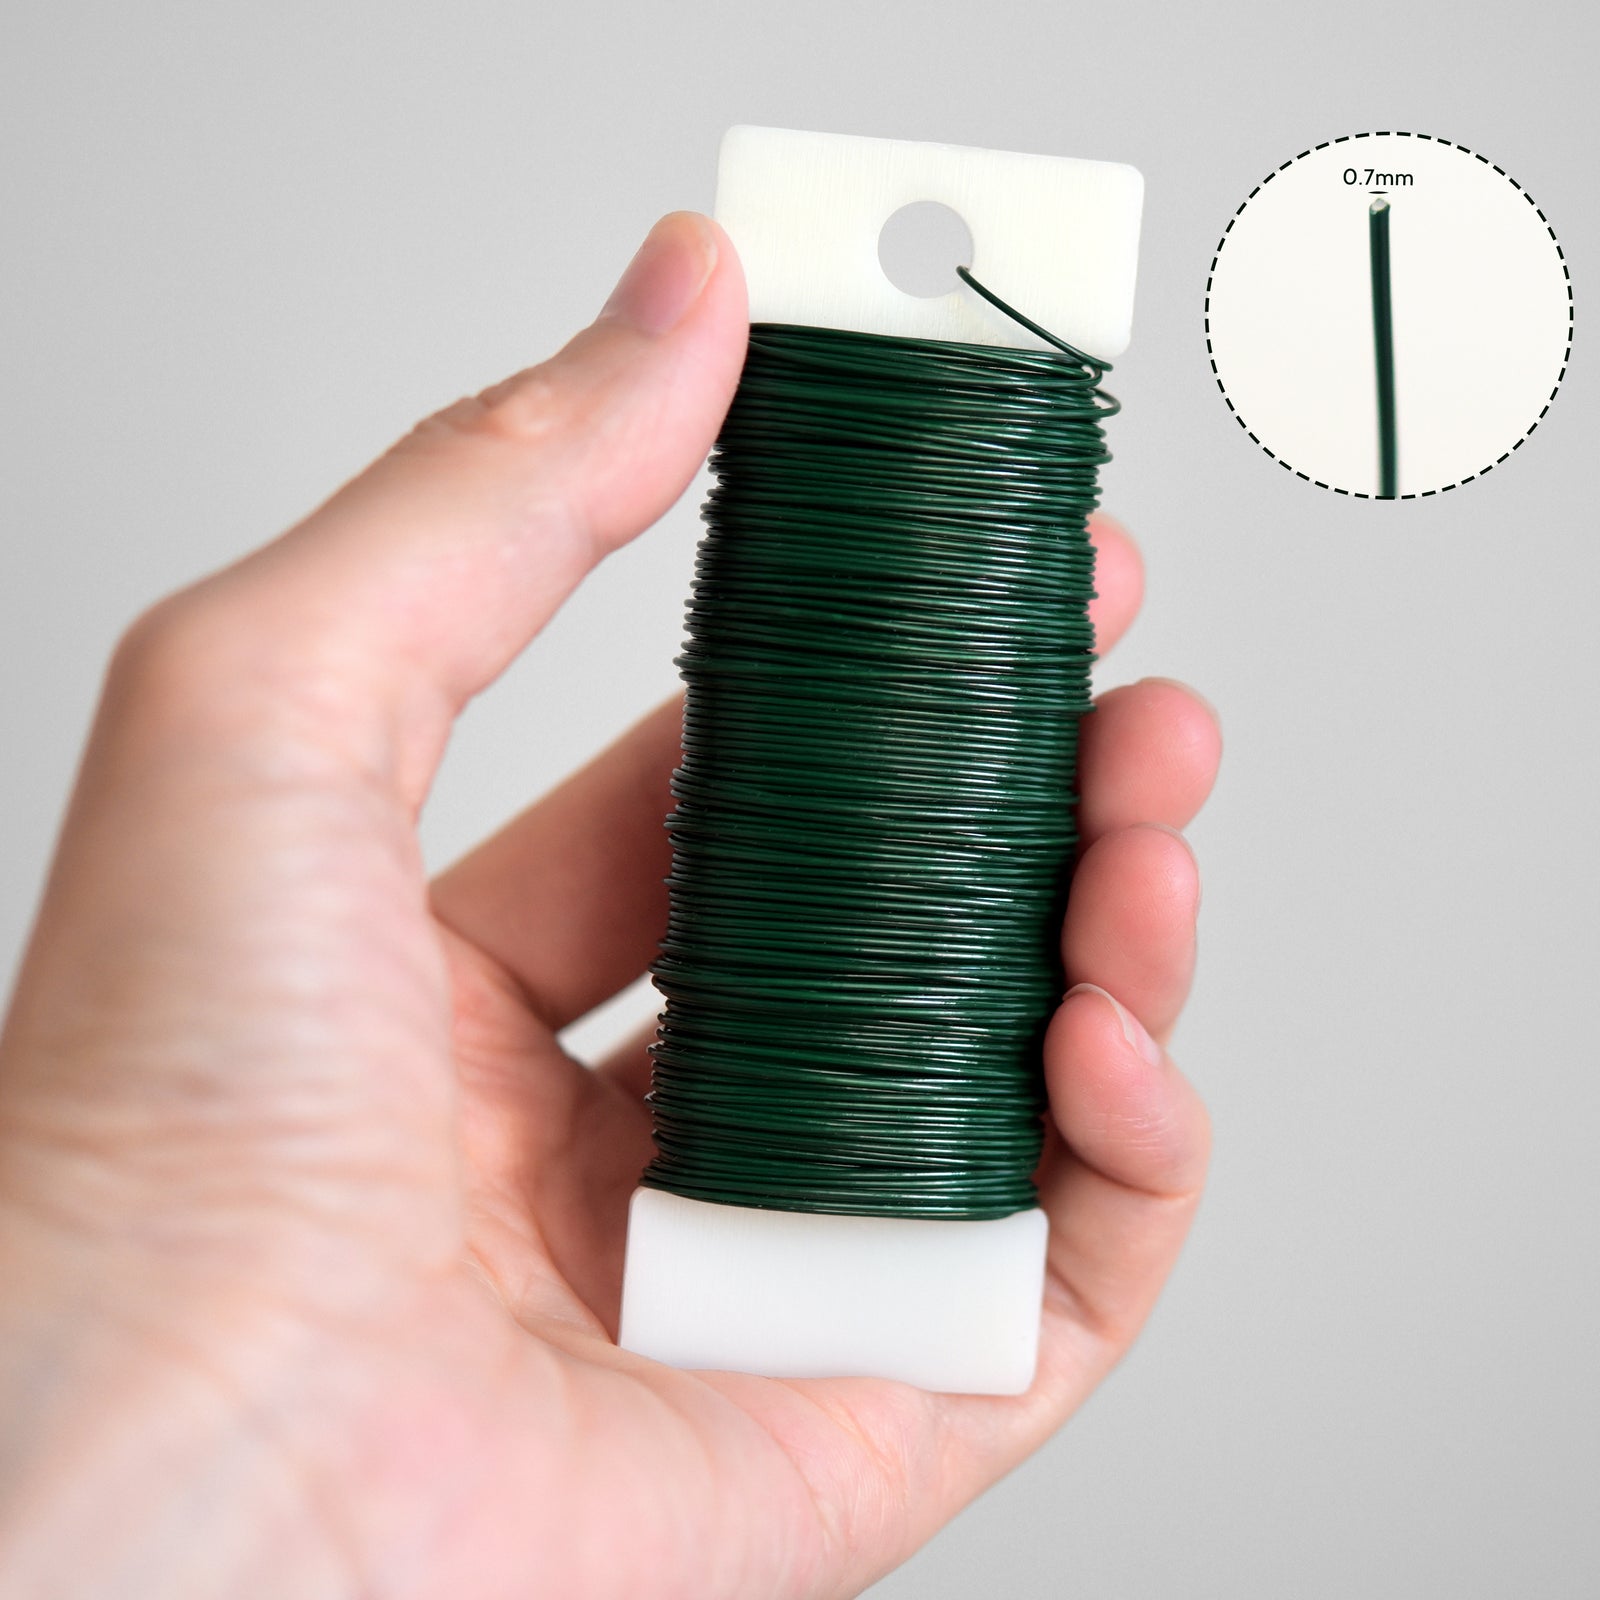 Green Floral Wire, 22 Gauge, Ø 0.7mm, Total 114 Ft